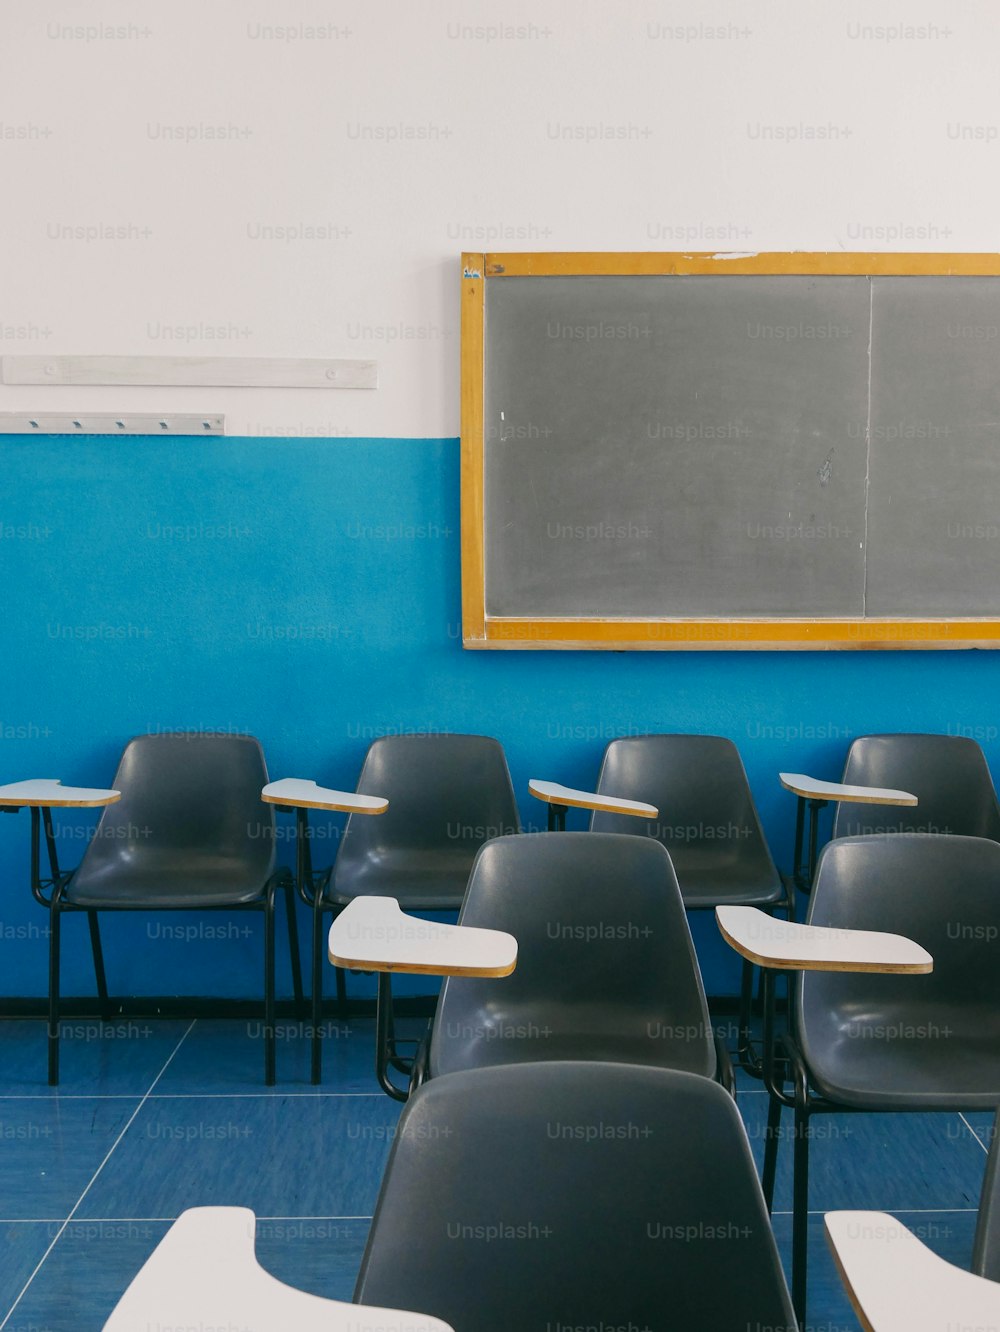 Une salle de classe aux murs bleus et aux chaises noires